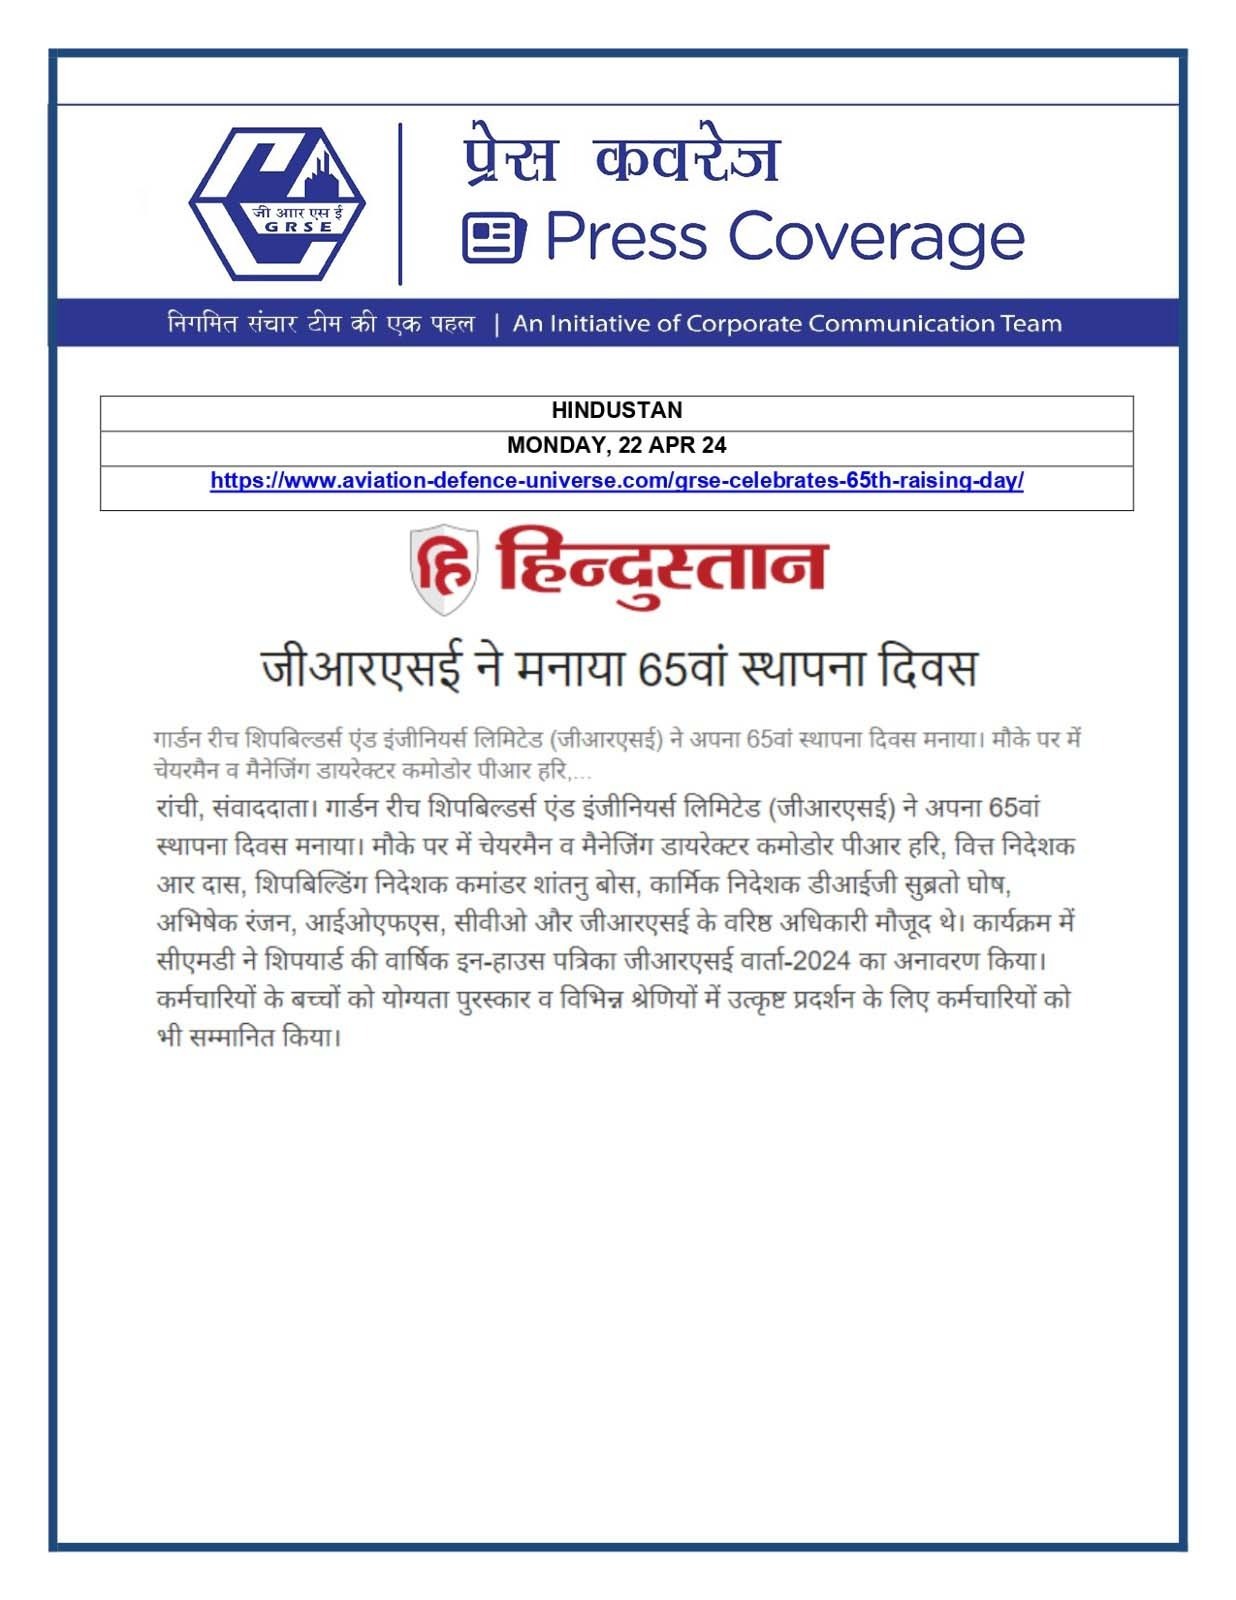 Press Coverage : Hindustan, 22 Apr 24 : GRSE Celebrates 65th Raising Day